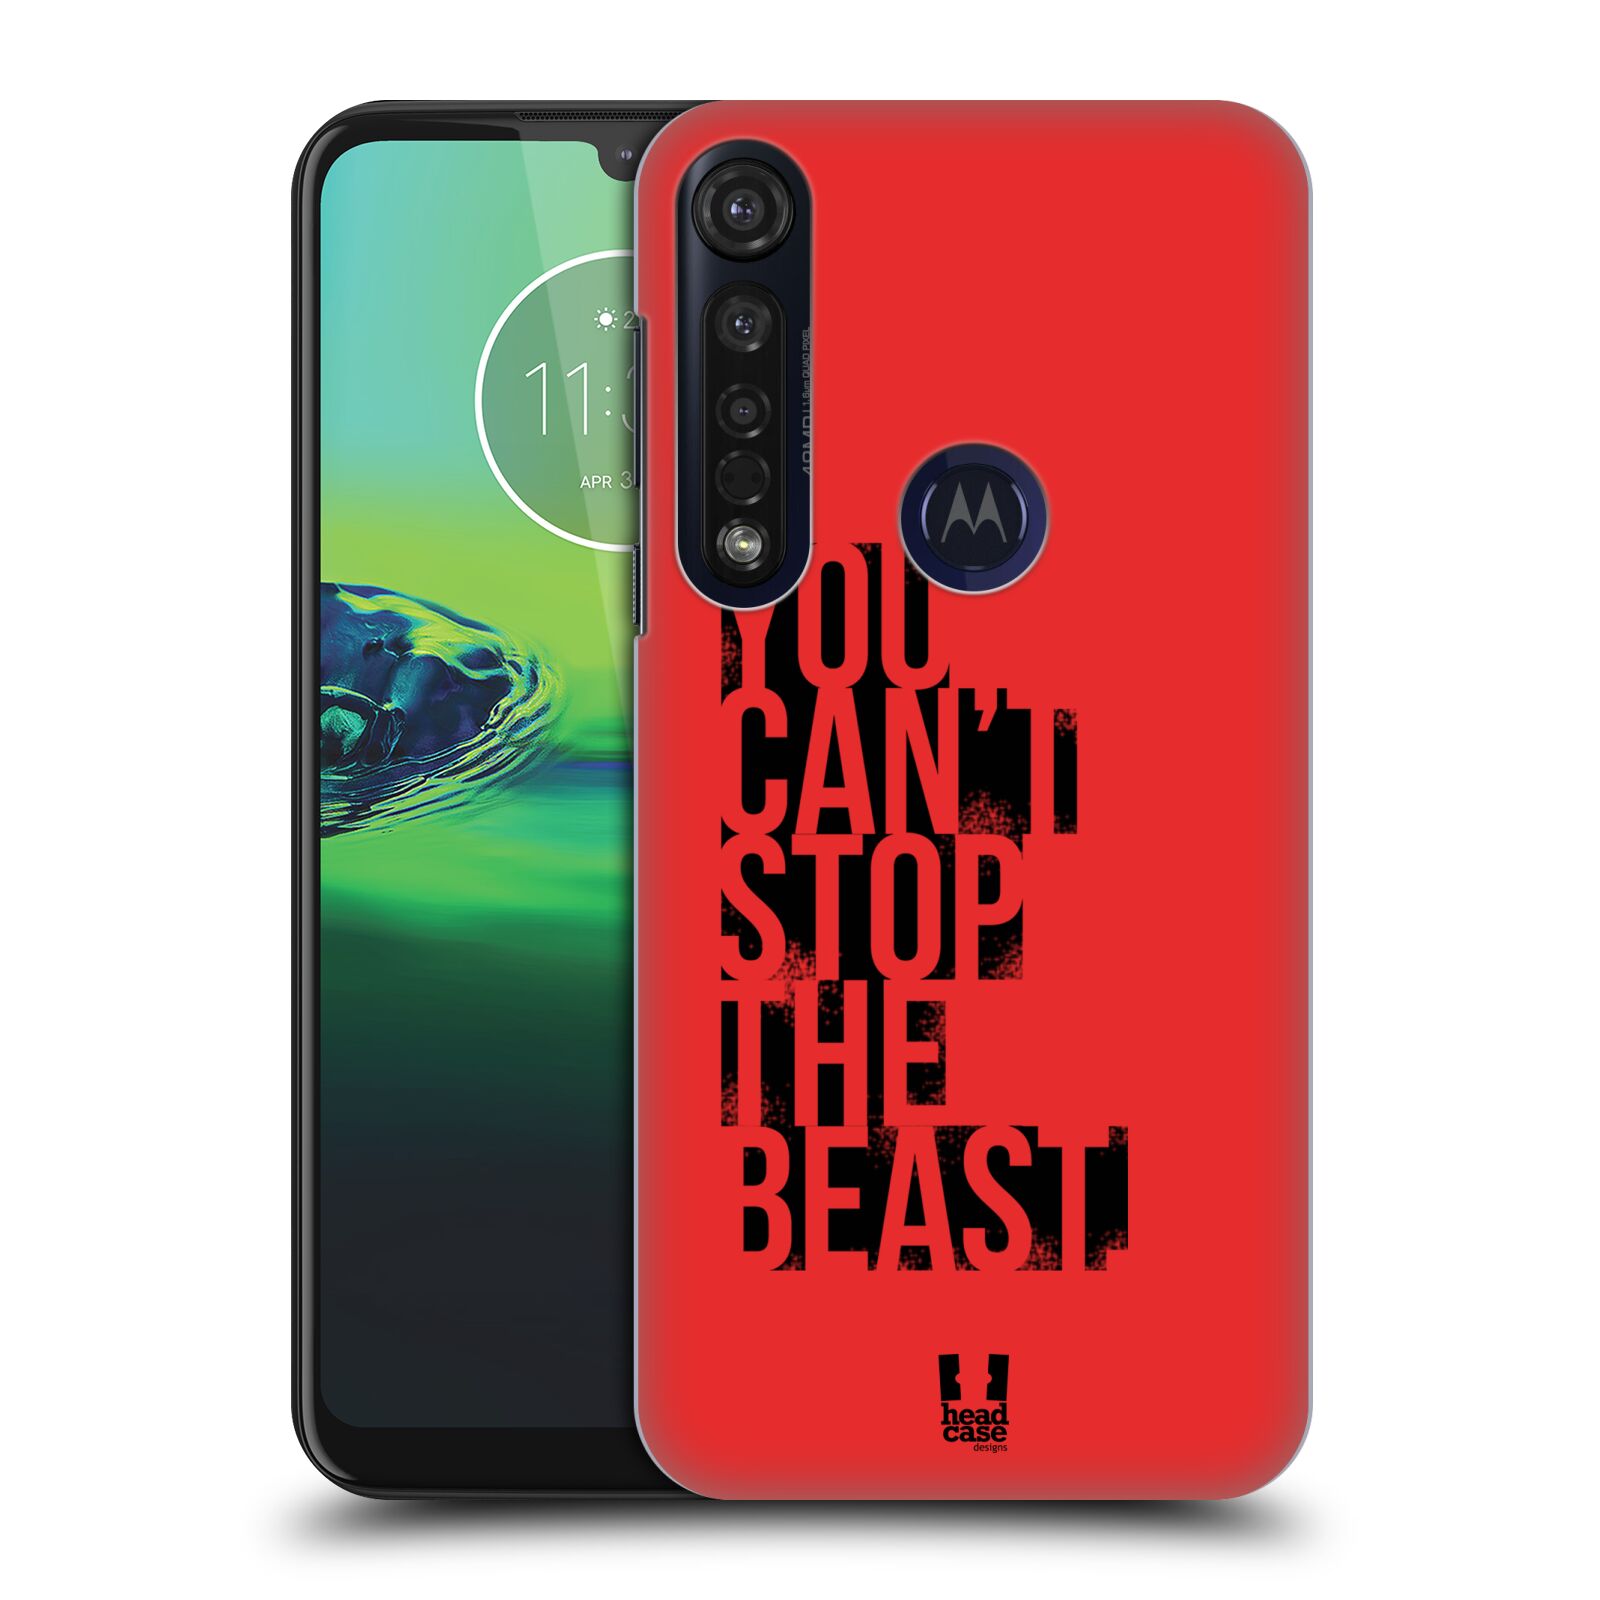 Pouzdro na mobil Motorola Moto G8 PLUS - HEAD CASE - Sportovní tématika Beast mode červená